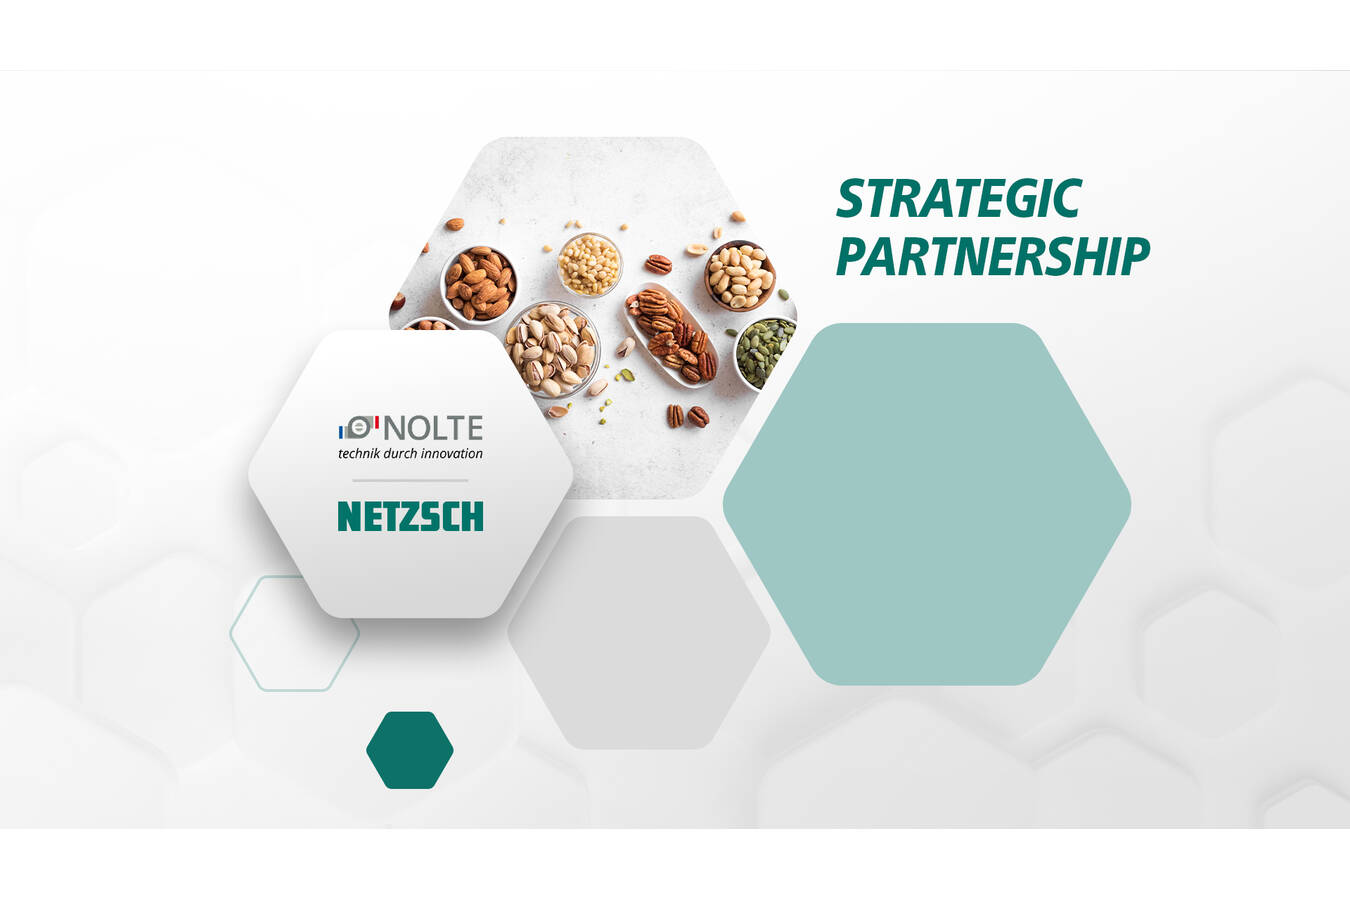 NETZSCH Nolte partnership